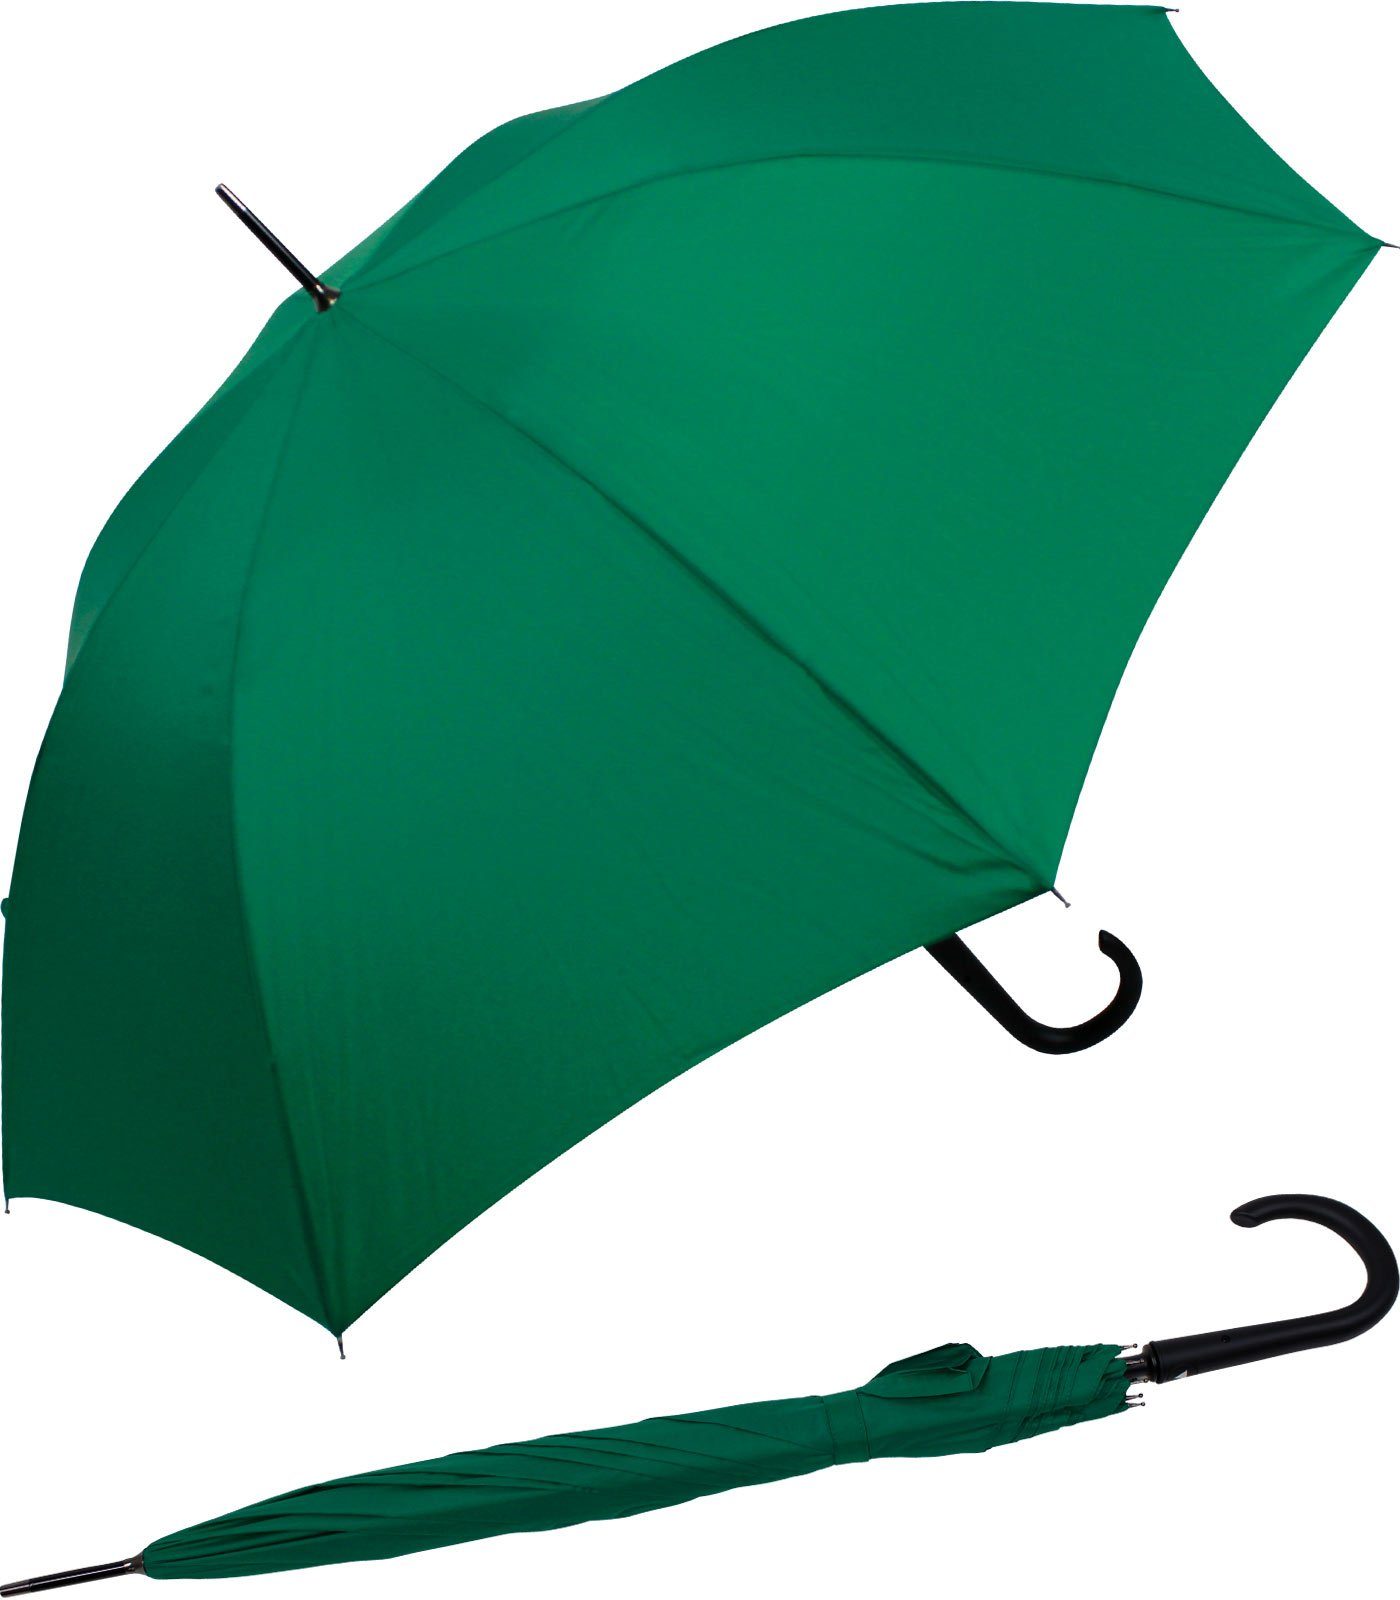 RS-Versand Langregenschirm großer stabiler Regenschirm mit Auf-Automatik, Stahl-Fiberglas-Gestell, integrierter Auslöseknopf grün